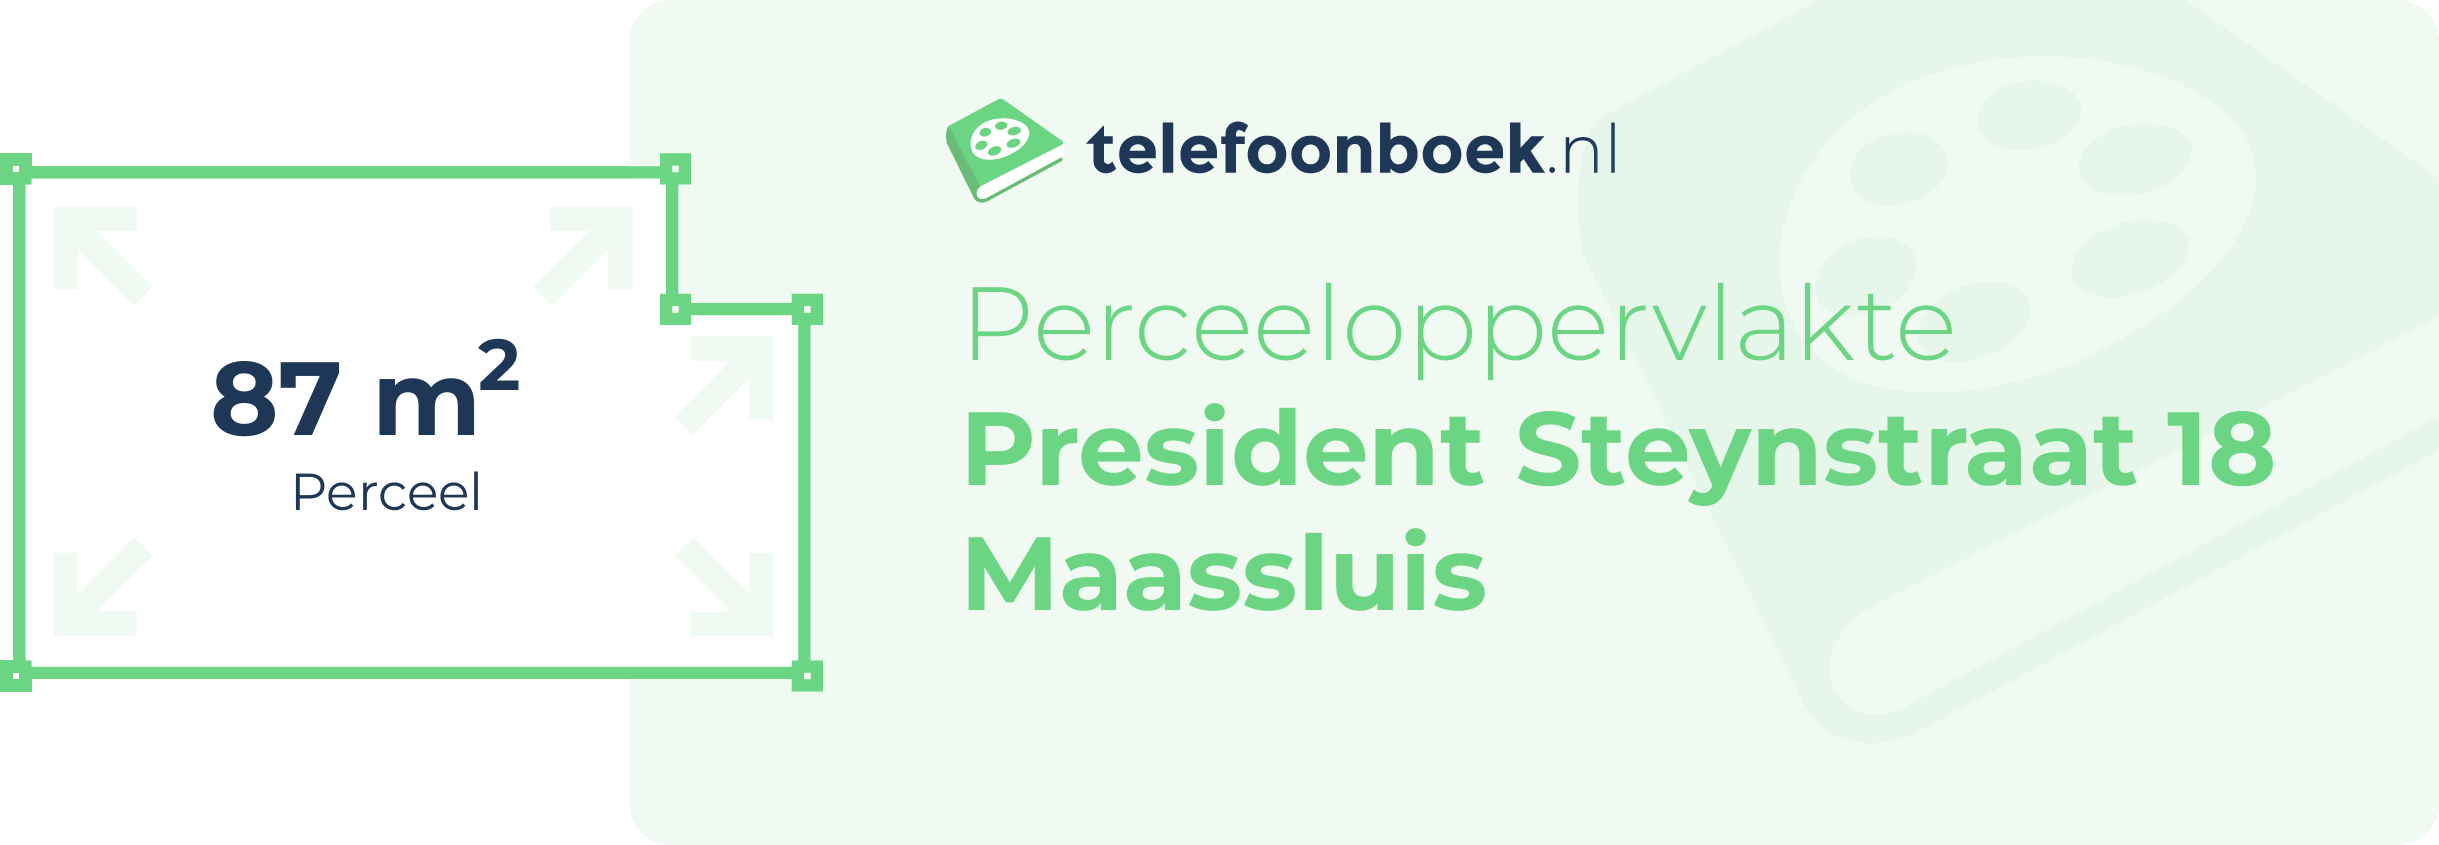 Perceeloppervlakte President Steynstraat 18 Maassluis